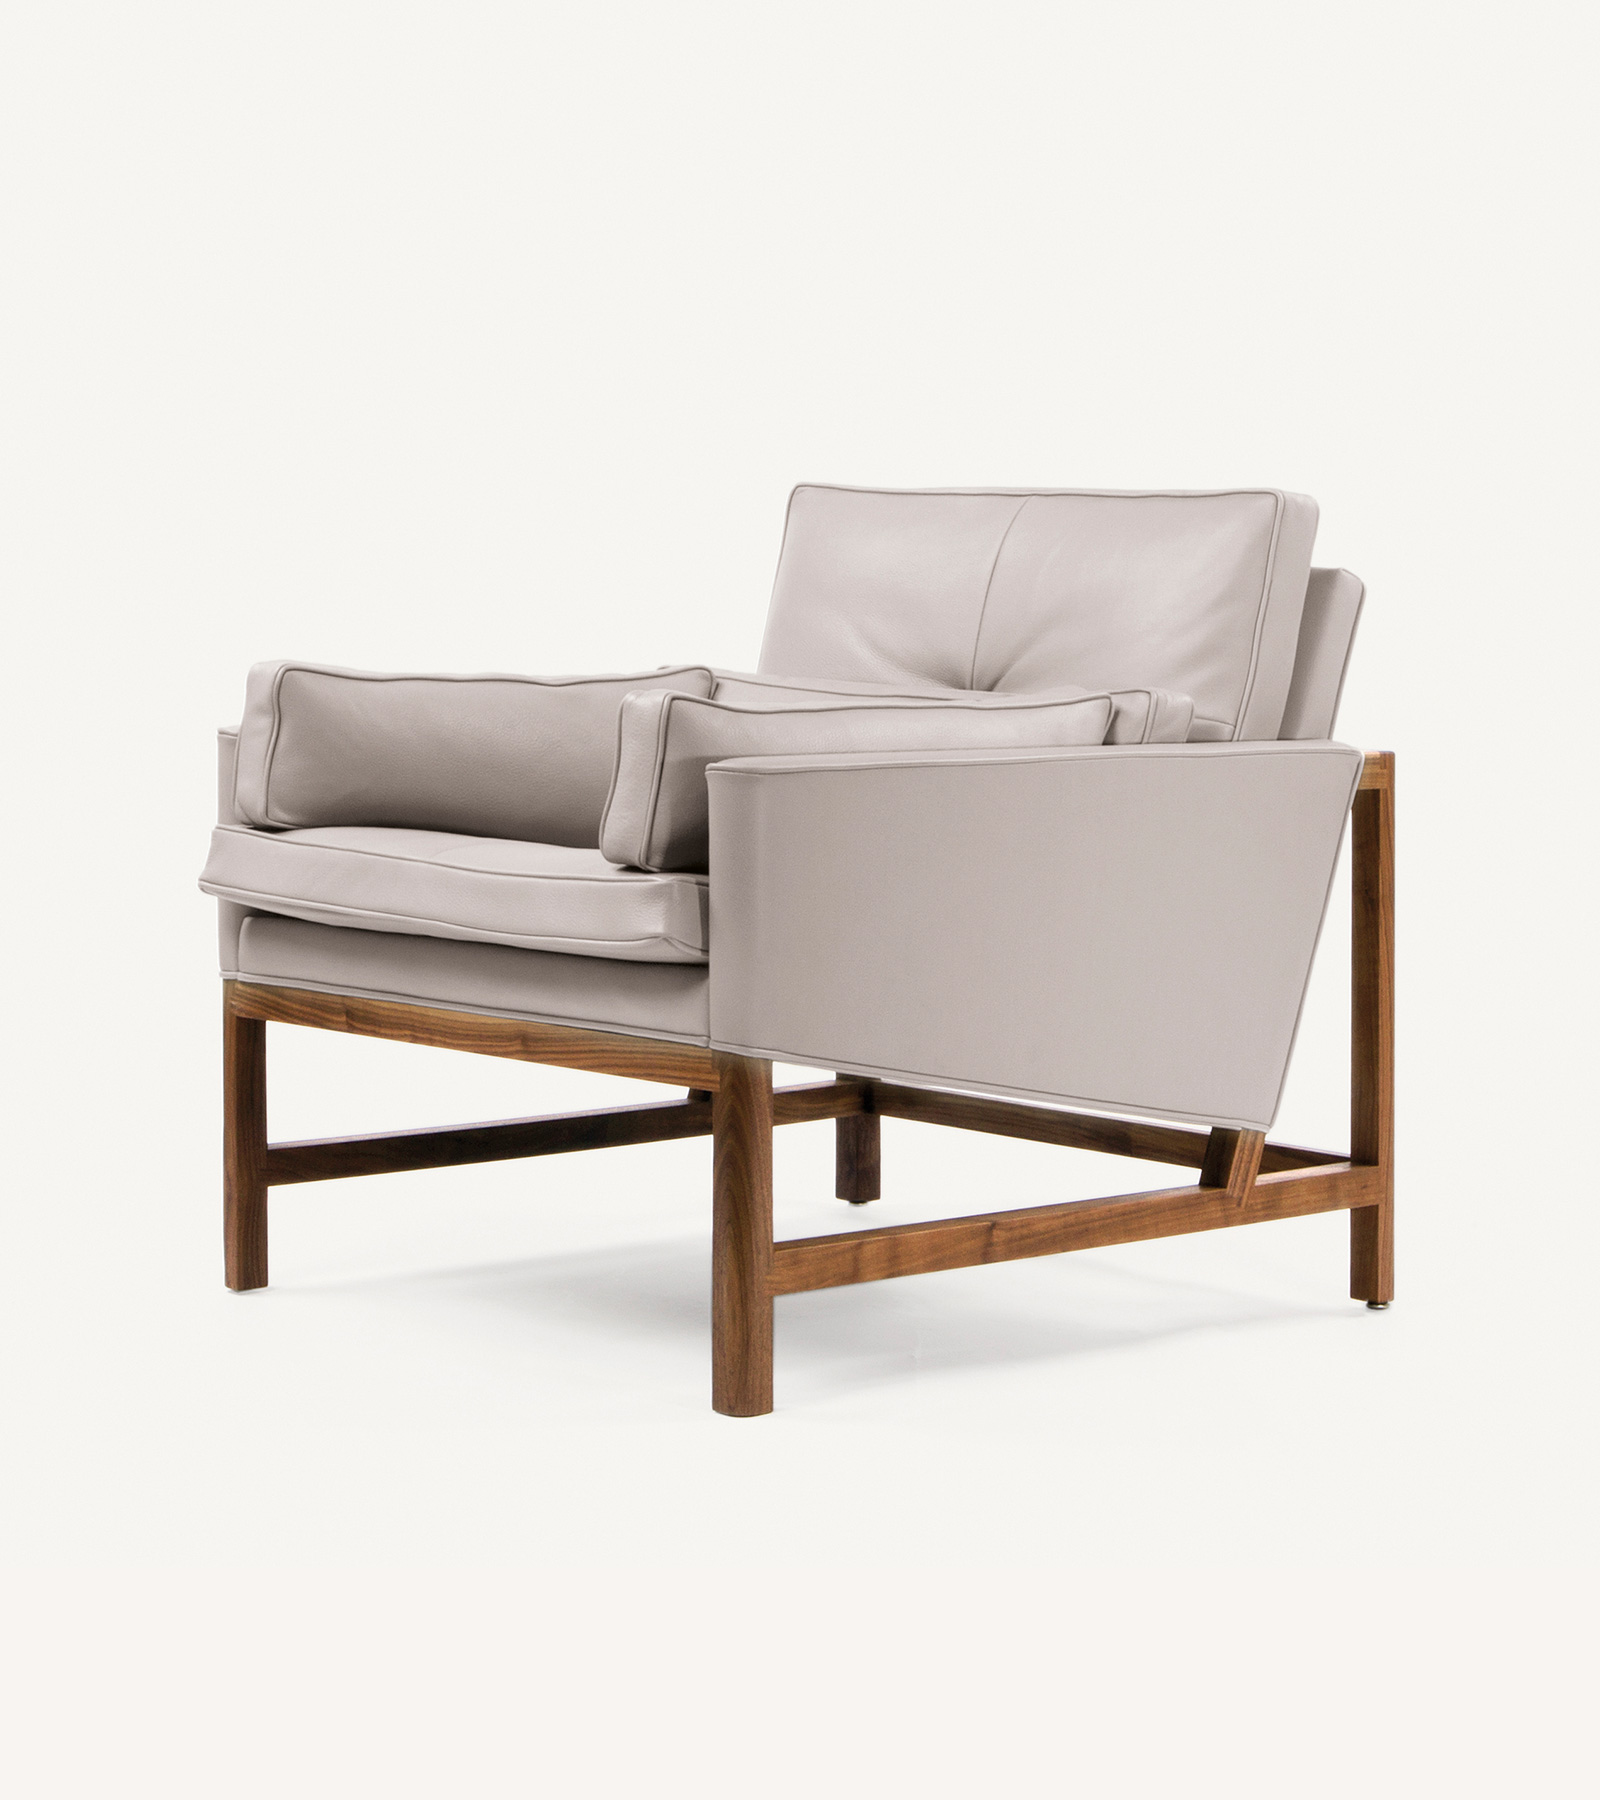 TinnappleMetz-bassamfellows-Wood-Frame-Lounge-Chair-05